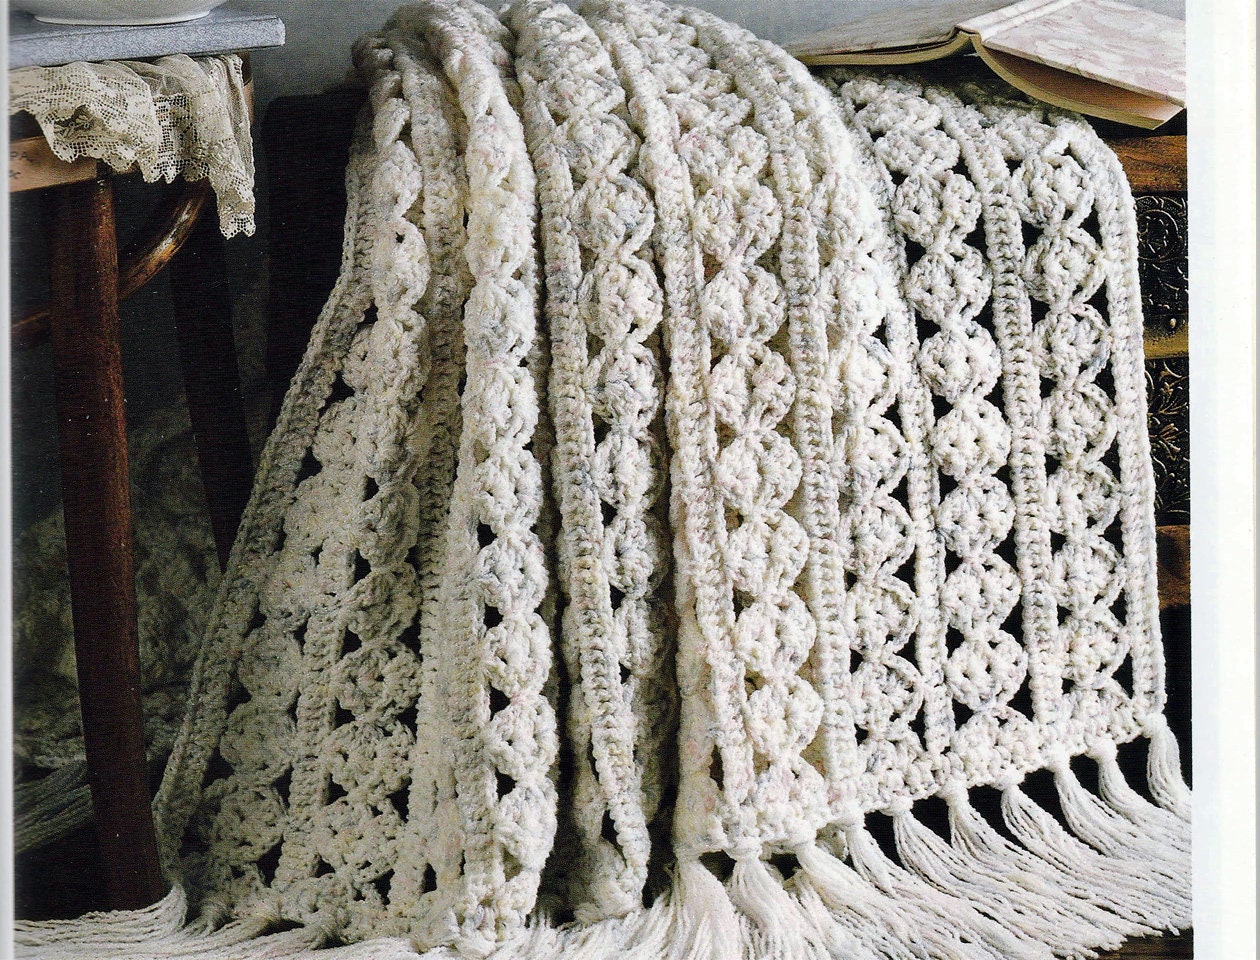 American School Needlework Afghan Elegance 5 Crochet Patterns #1129